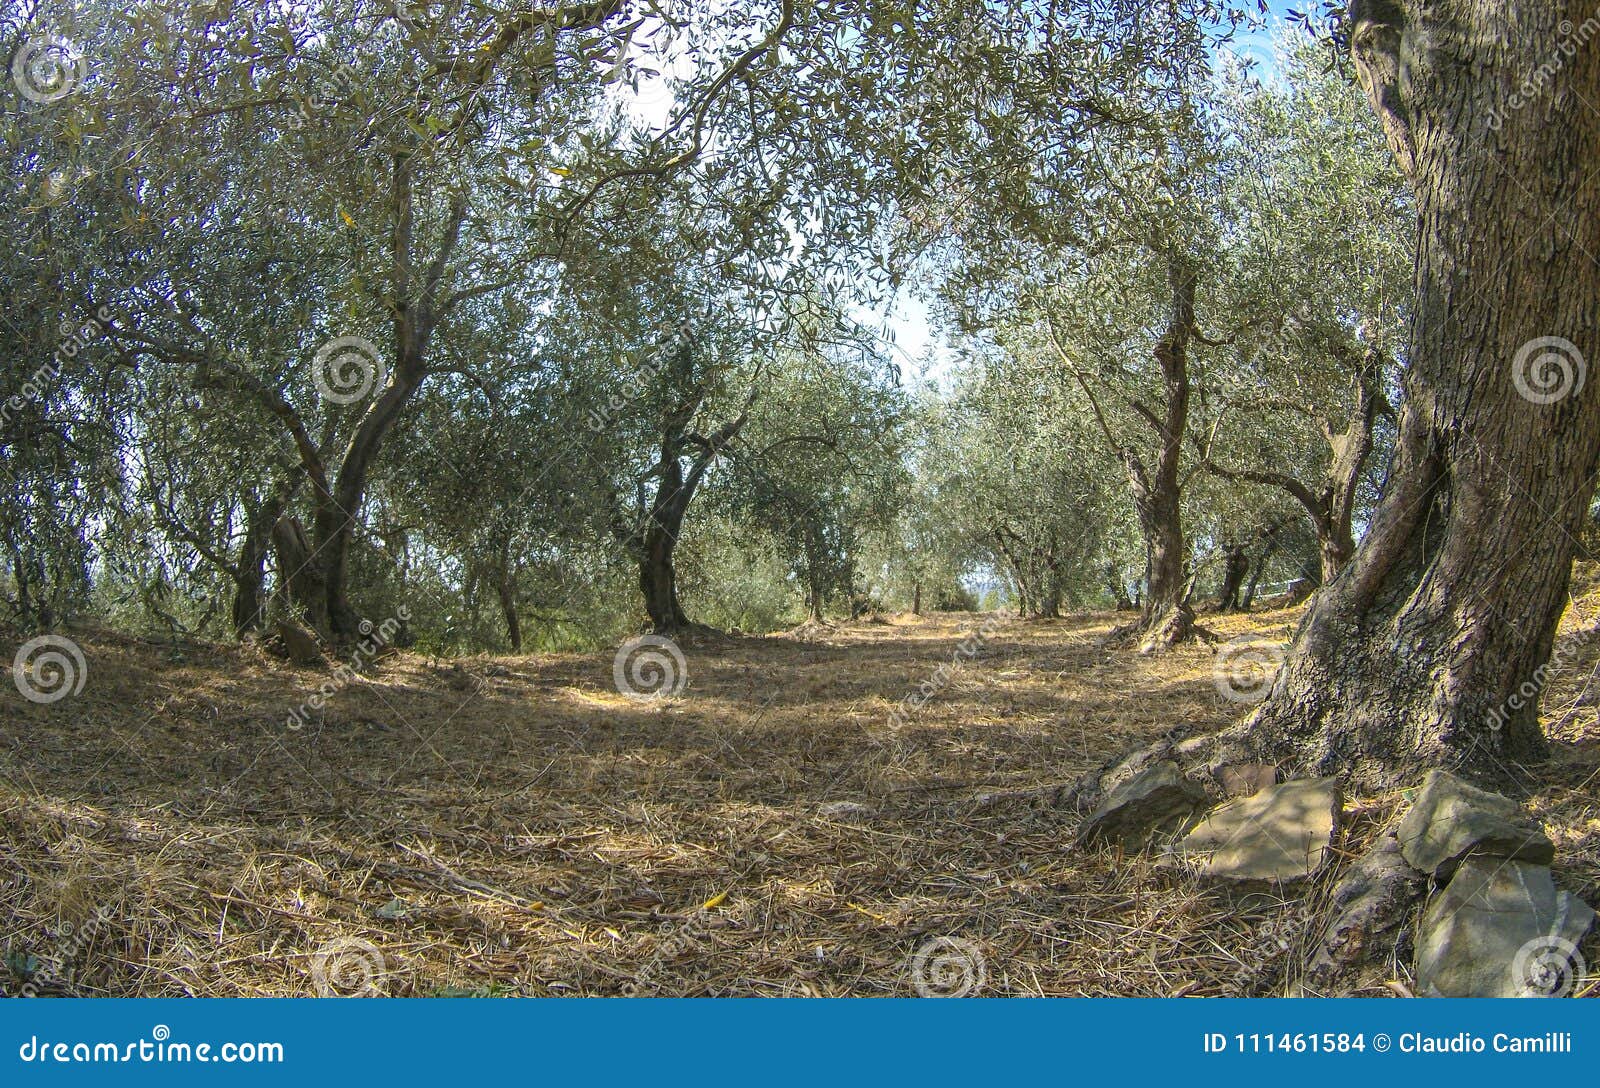 landsacape of ligurian olive trees